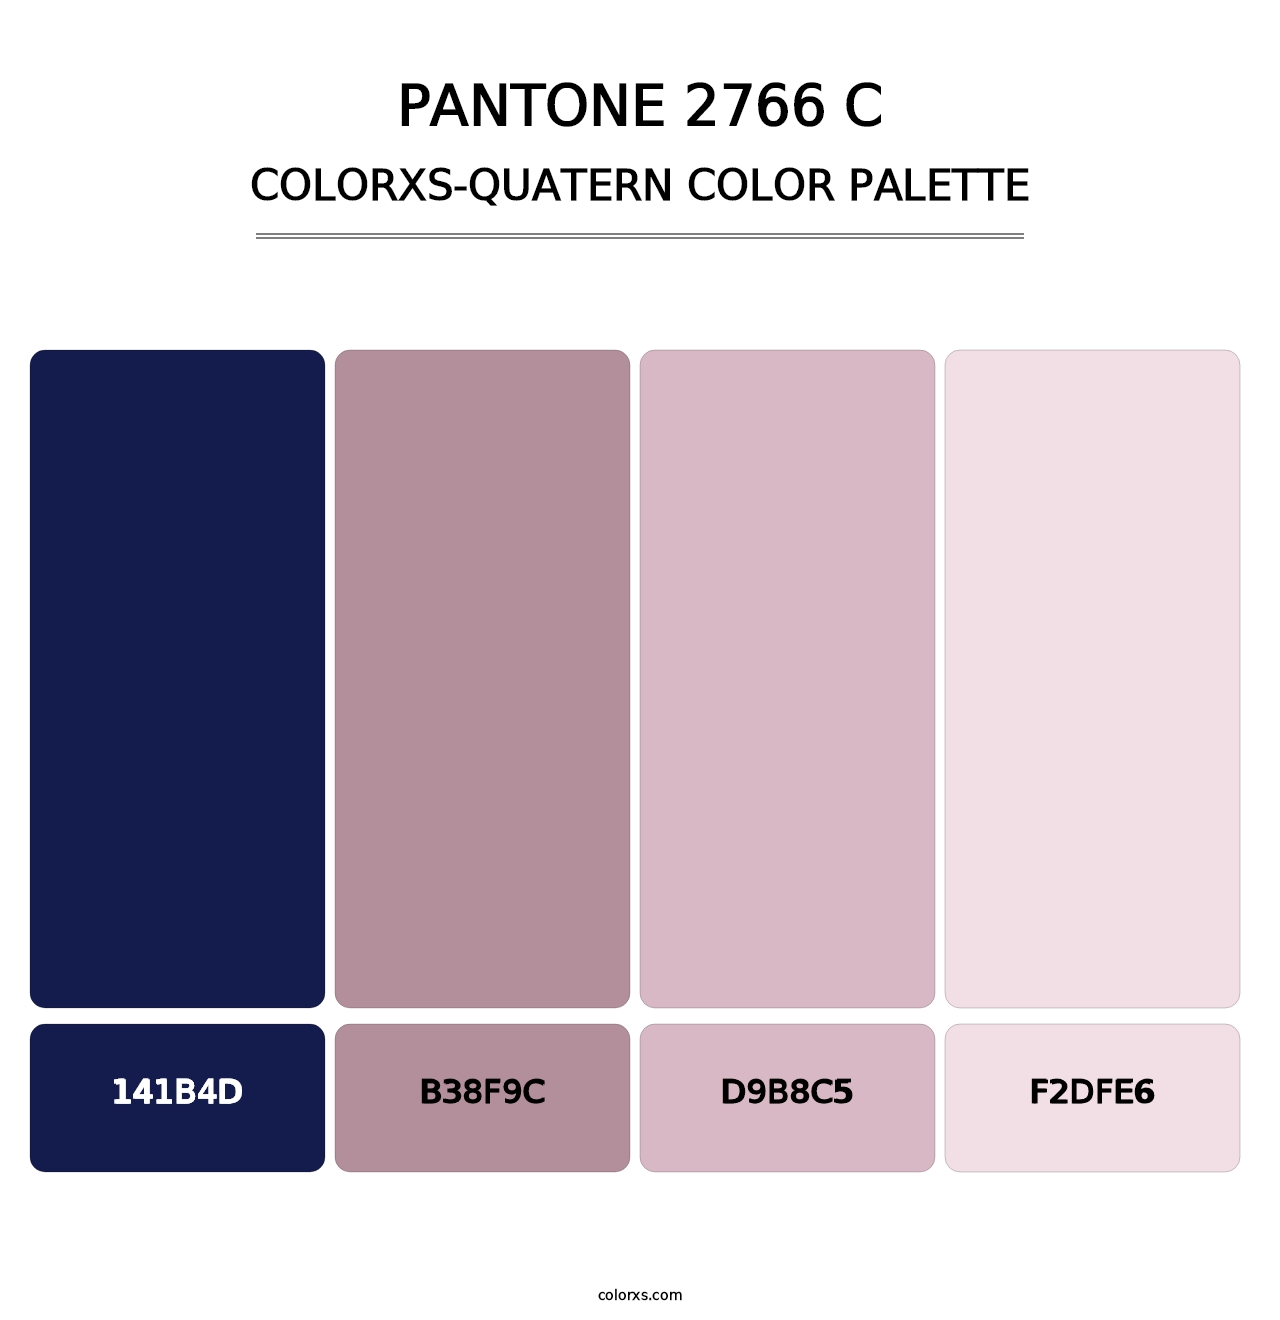 PANTONE 2766 C - Colorxs Quatern Palette